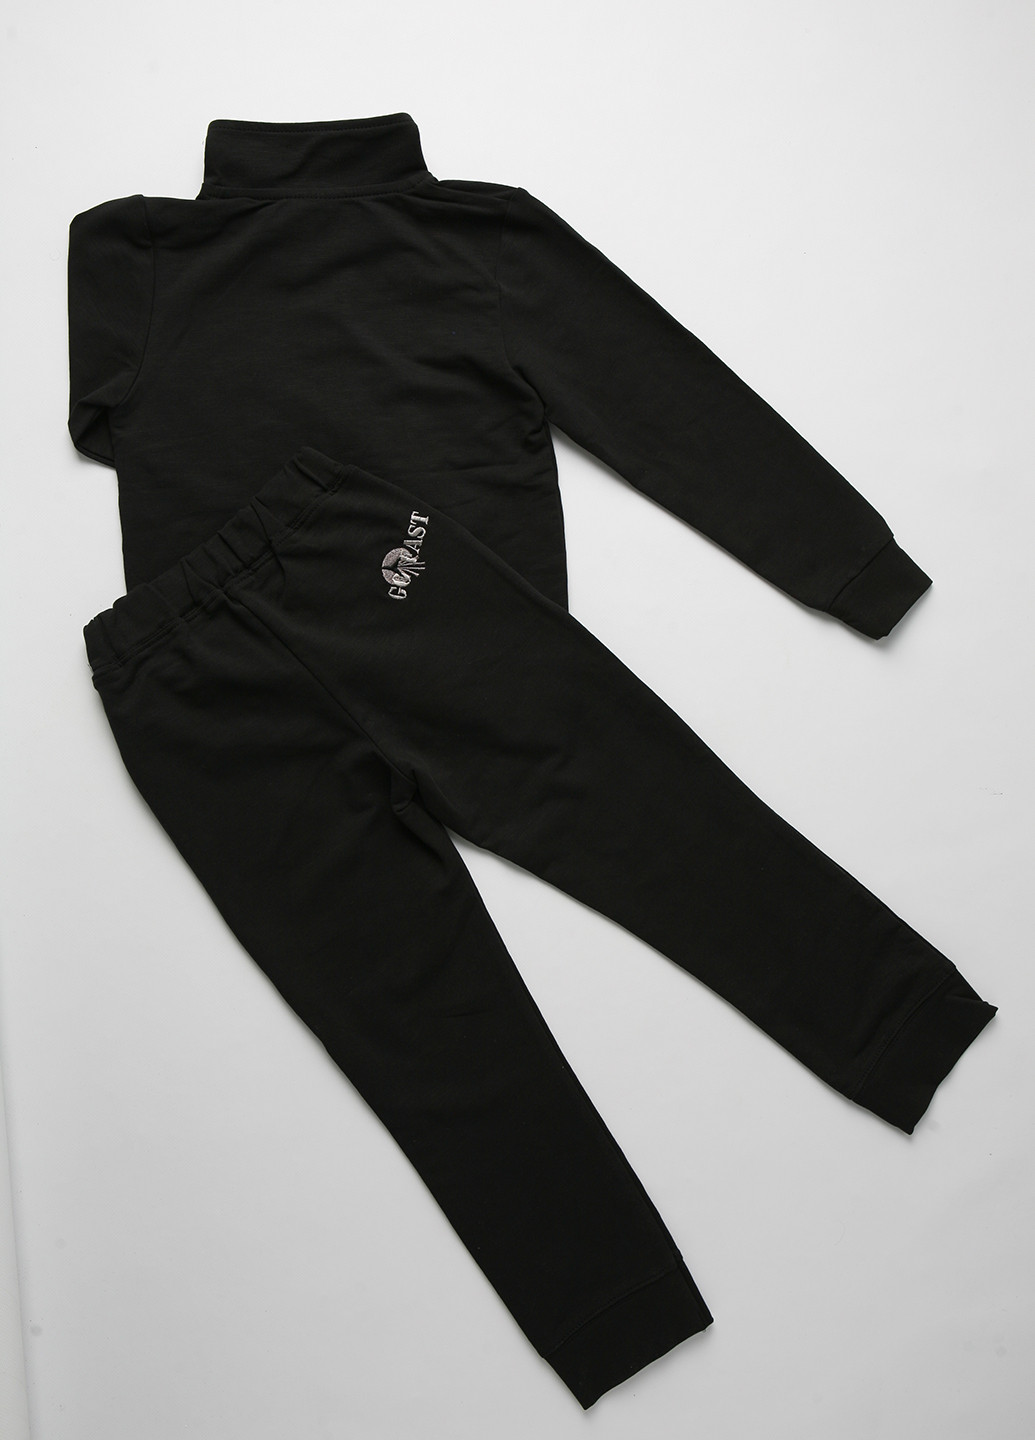 Черный демисезонный костюм (кофта, брюки) брючный Фламинго